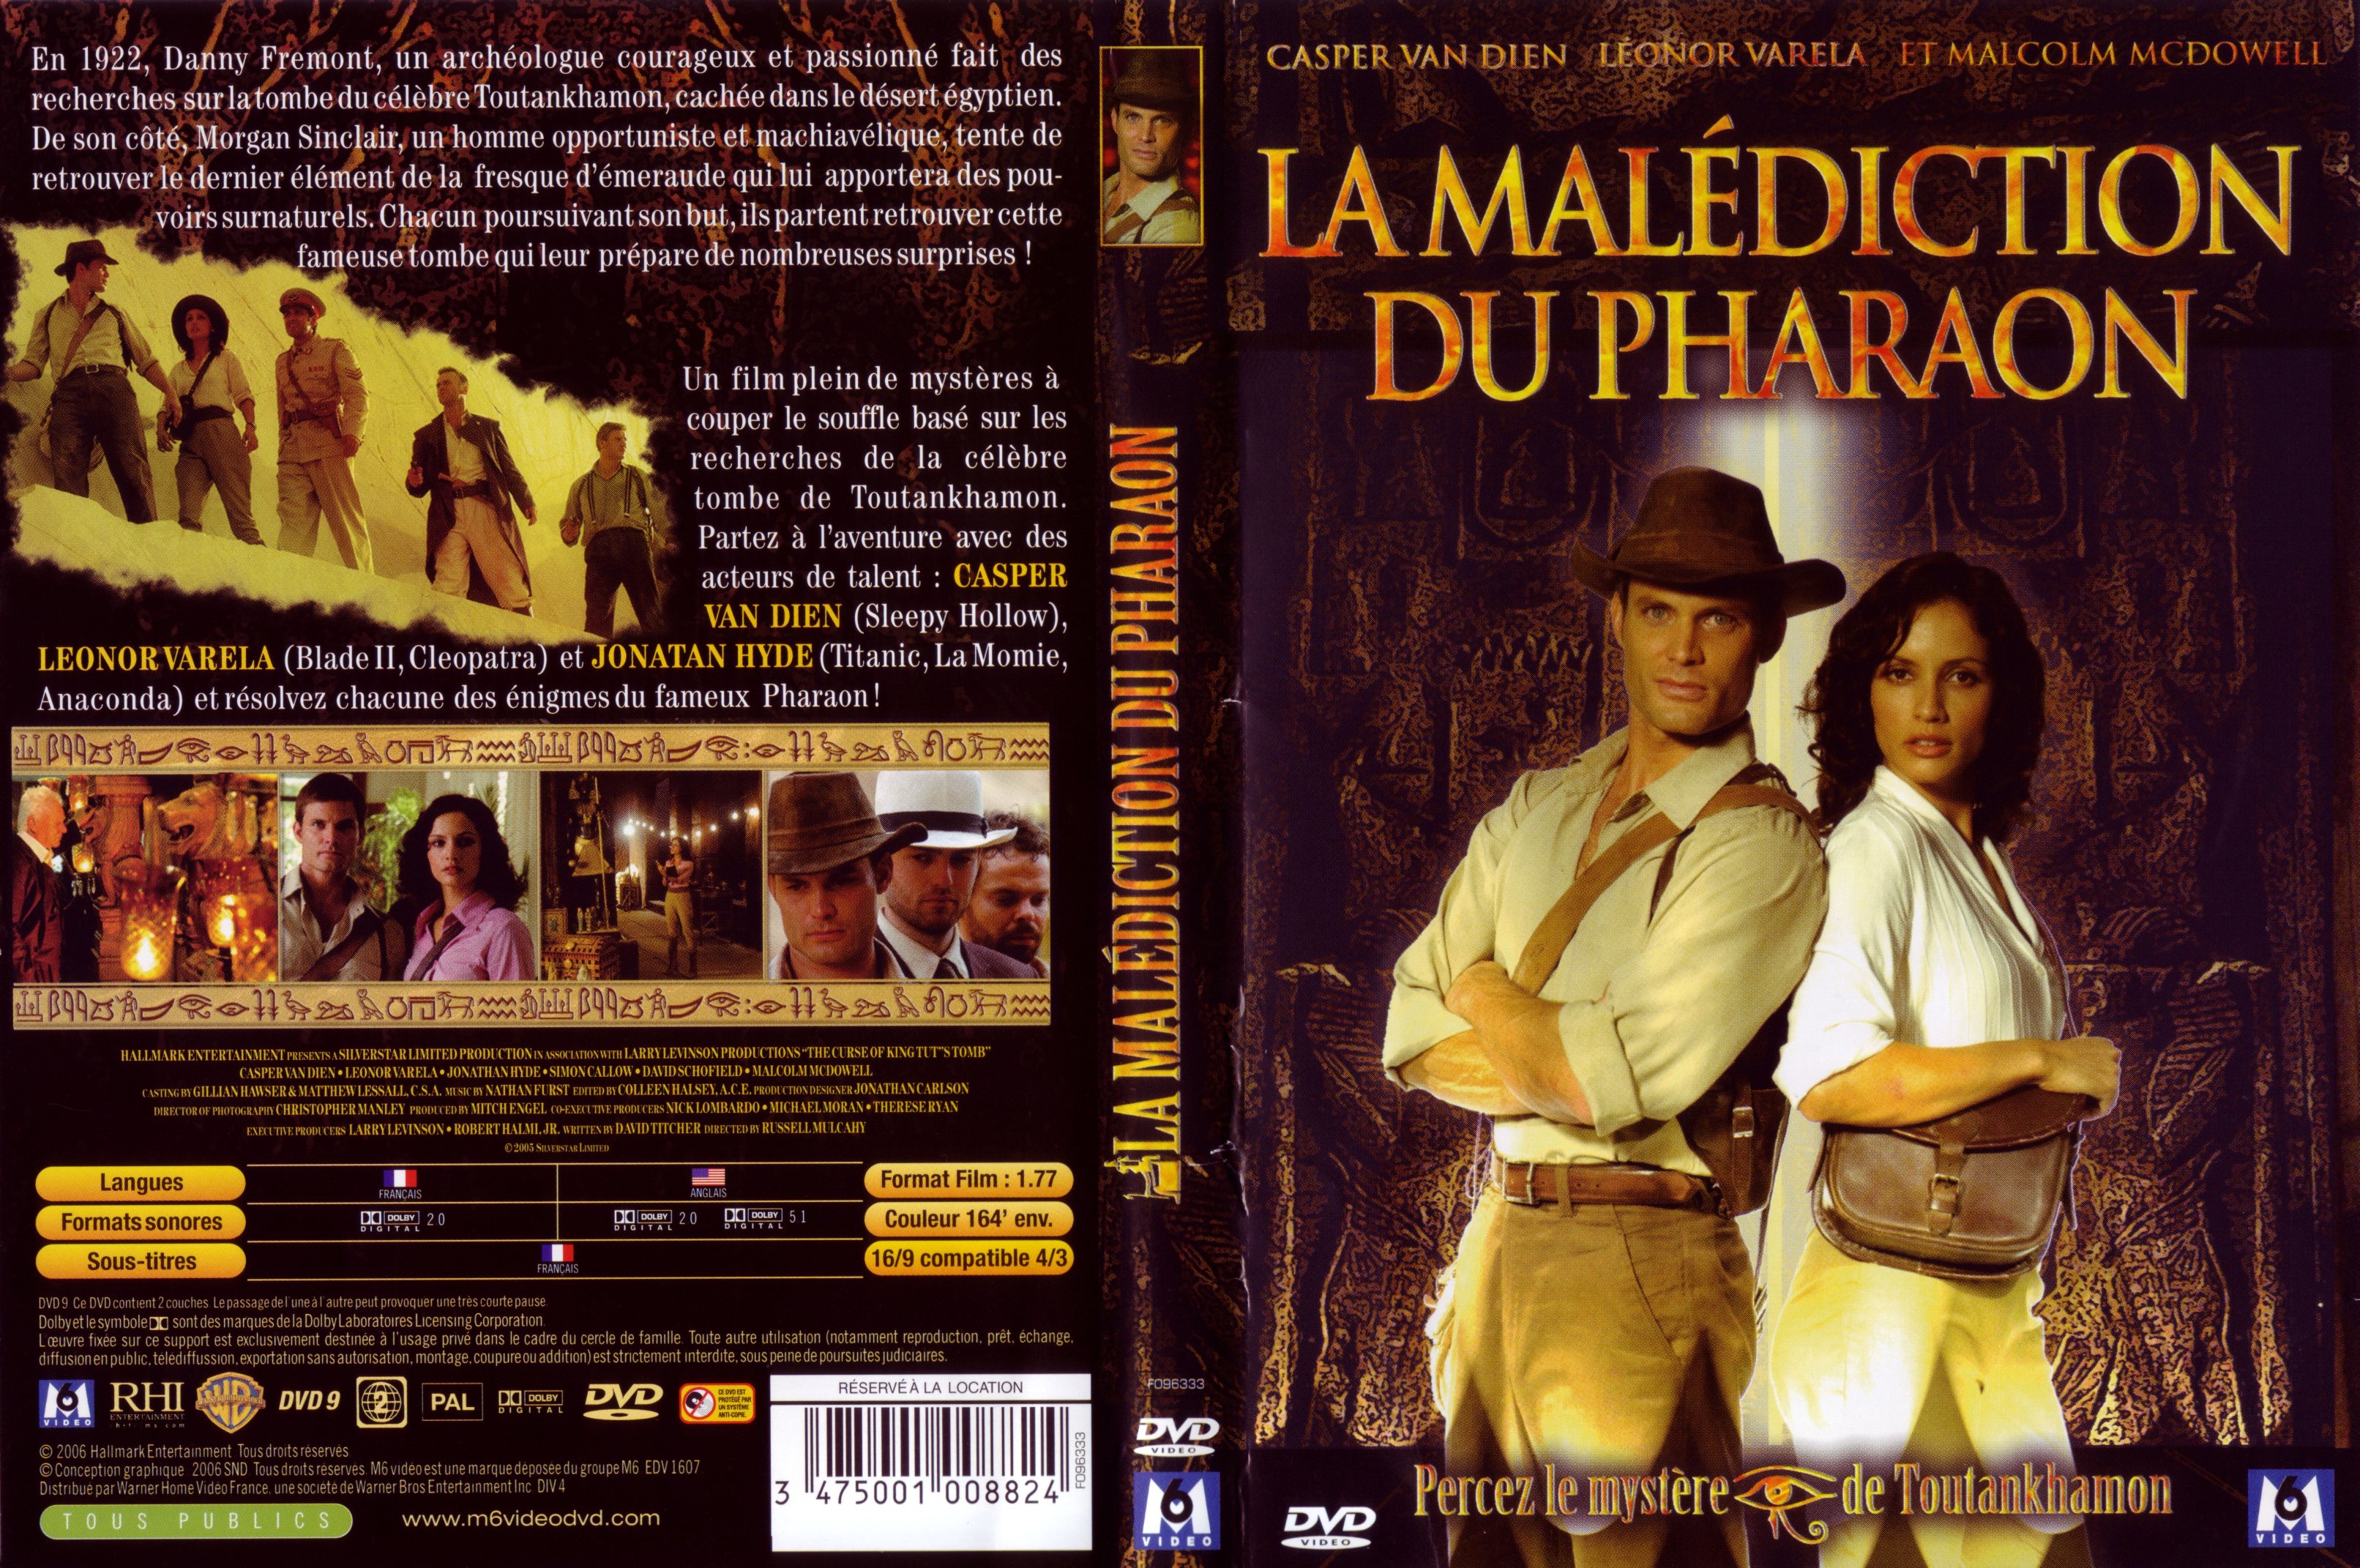 Jaquette DVD La maldiction du pharaon (2006)